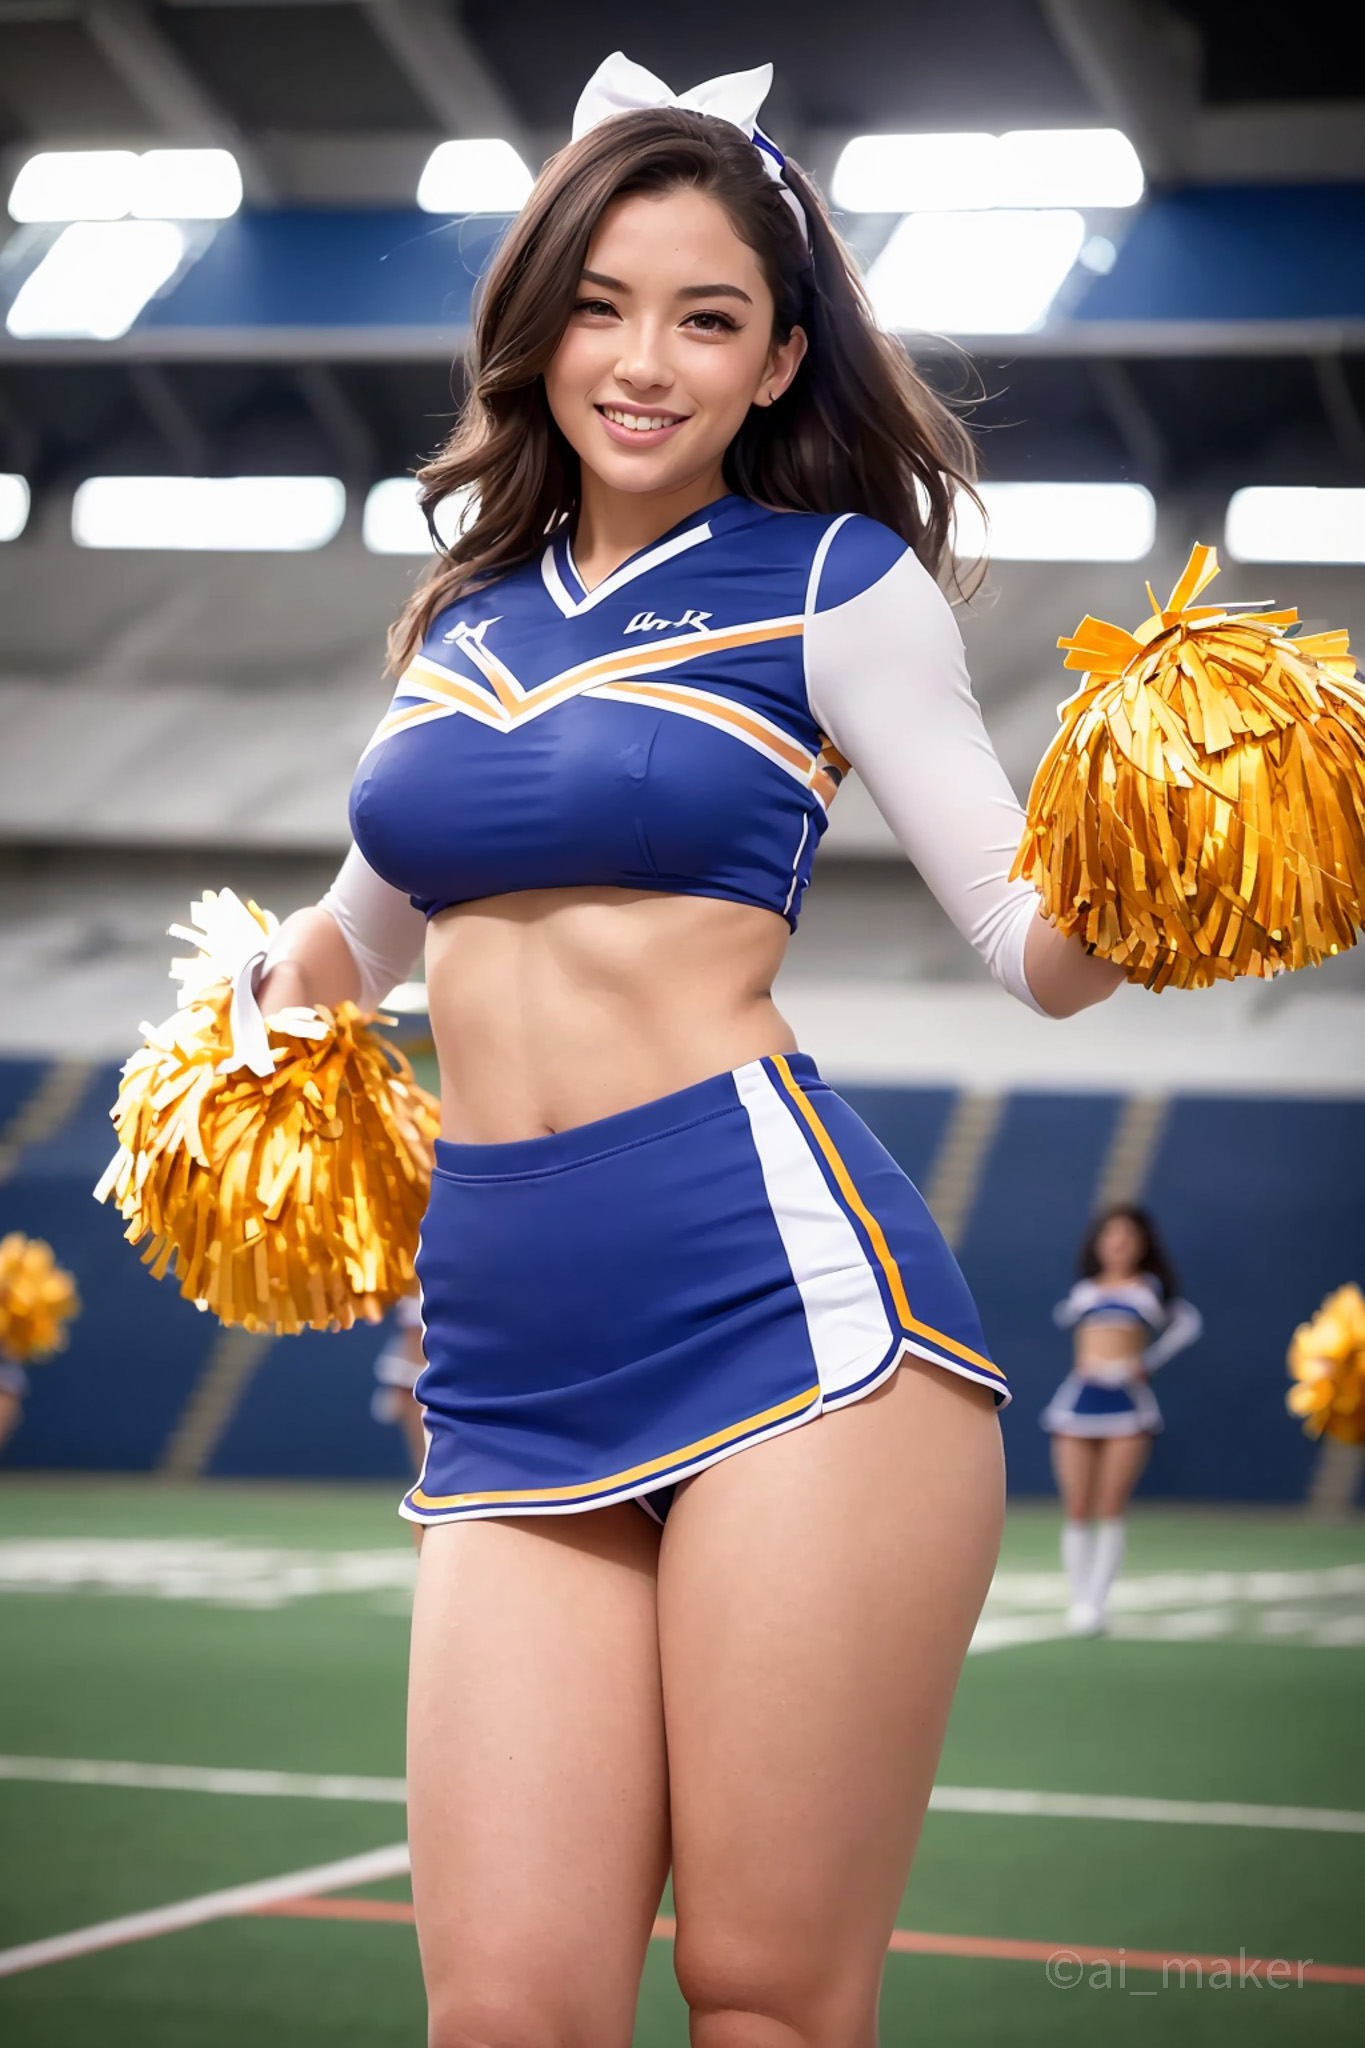 Hot cheerleader boobs